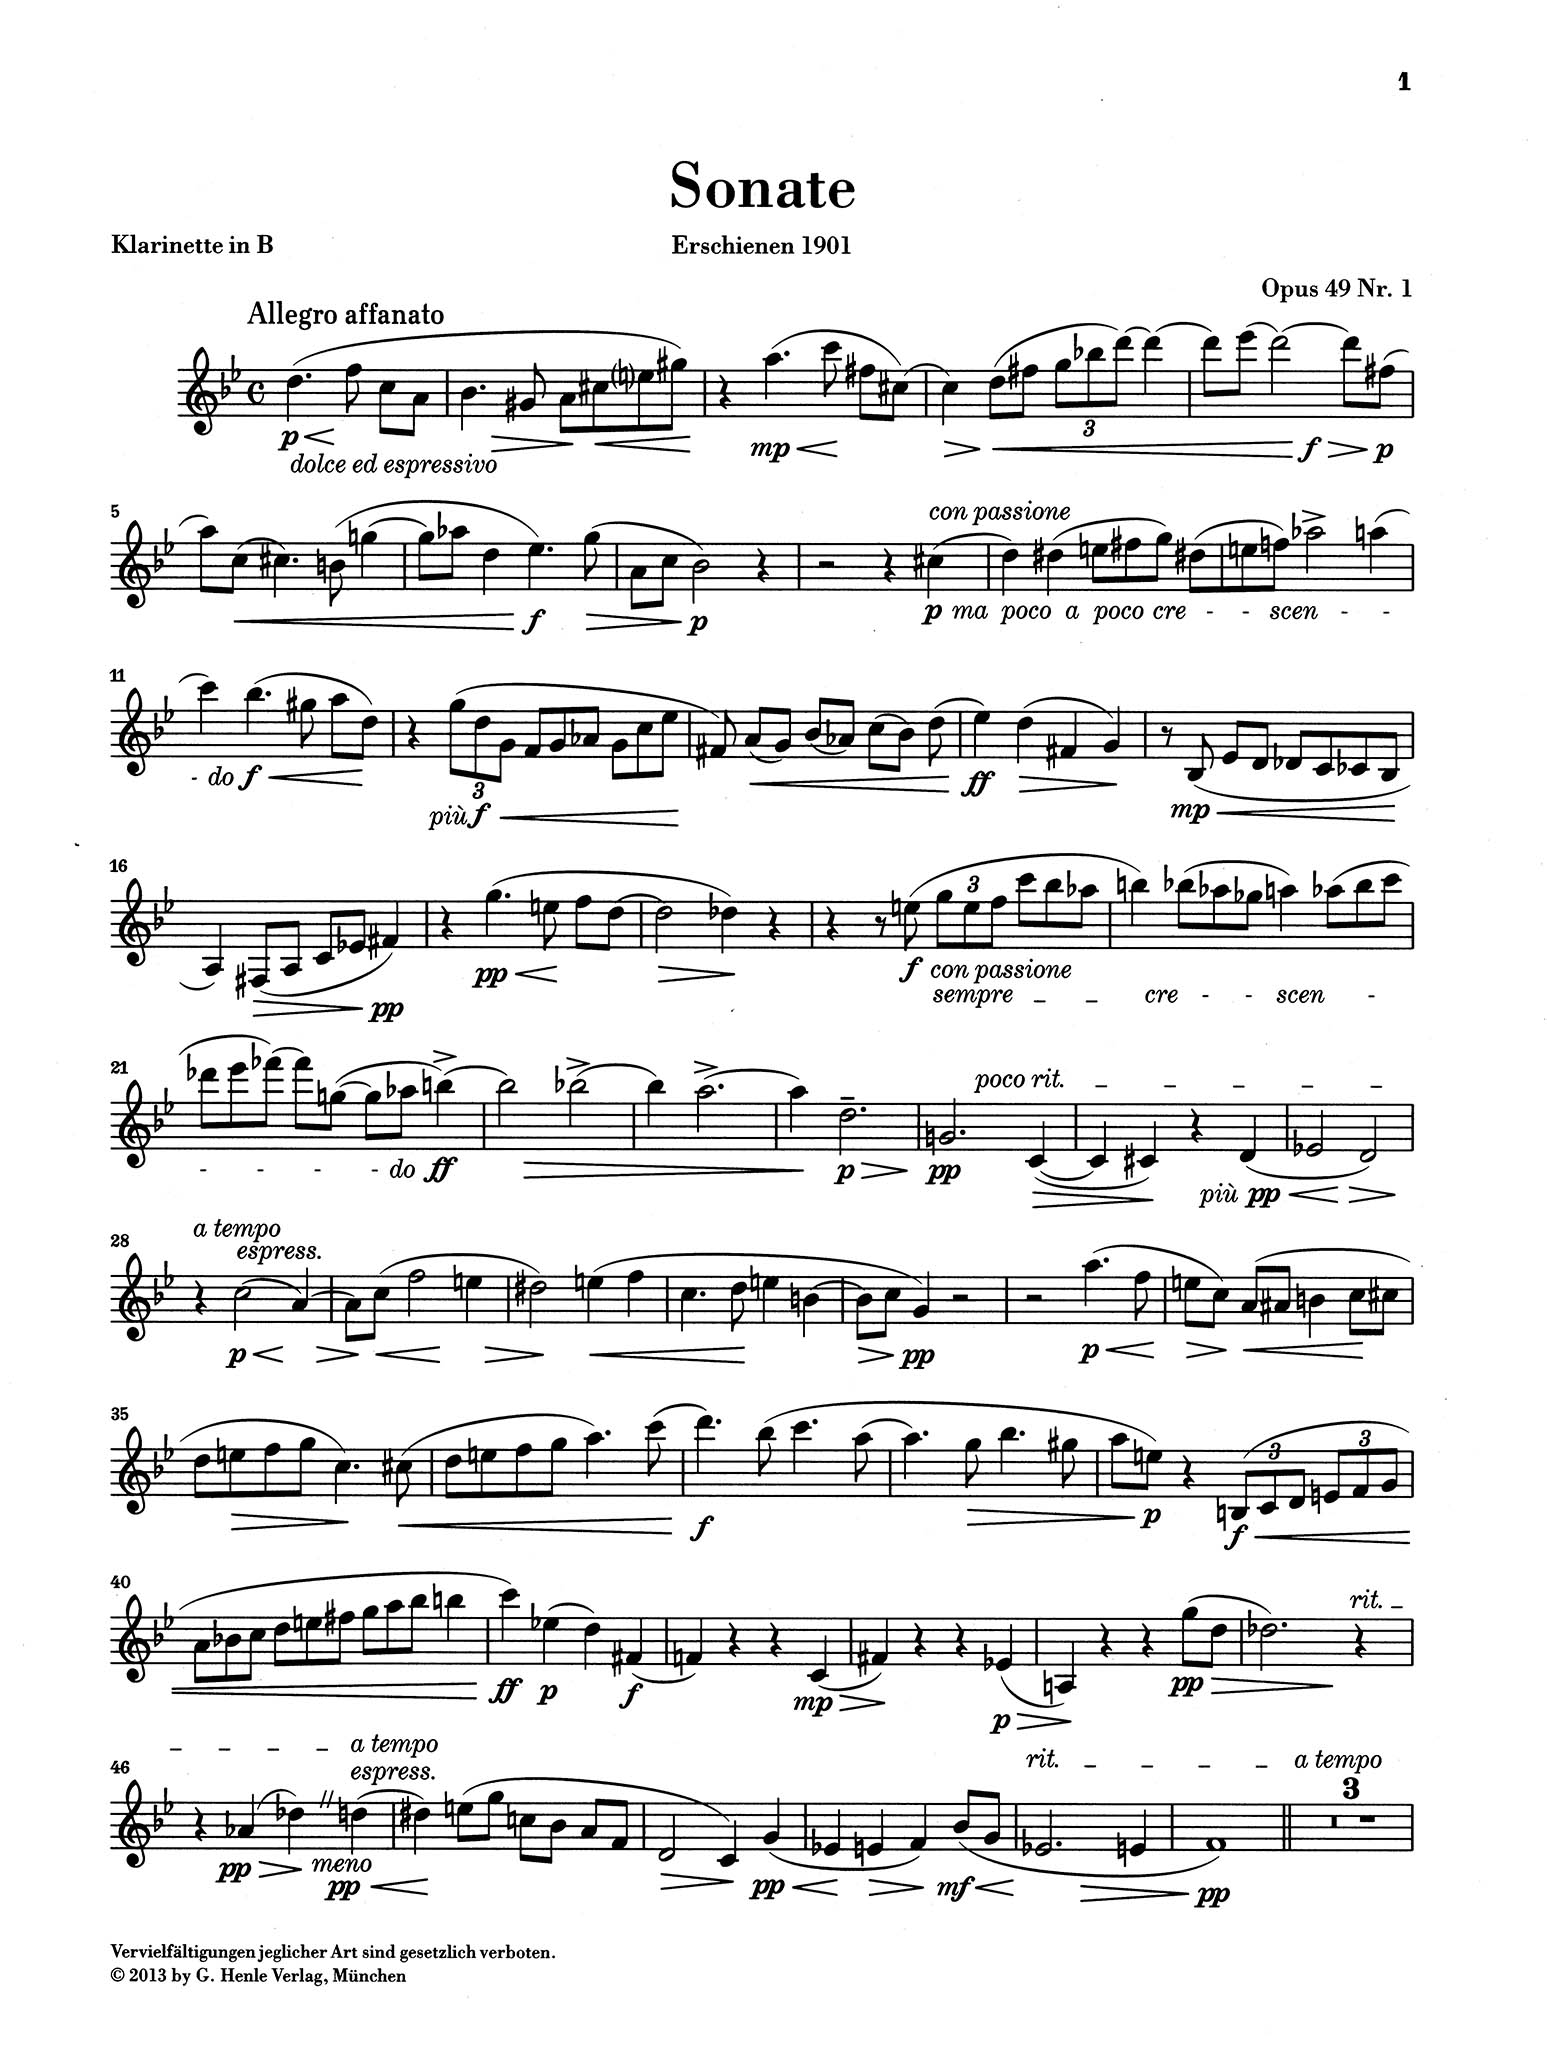 Sonata in F-sharp Minor, Op. 49 No. 2 Clarinet part